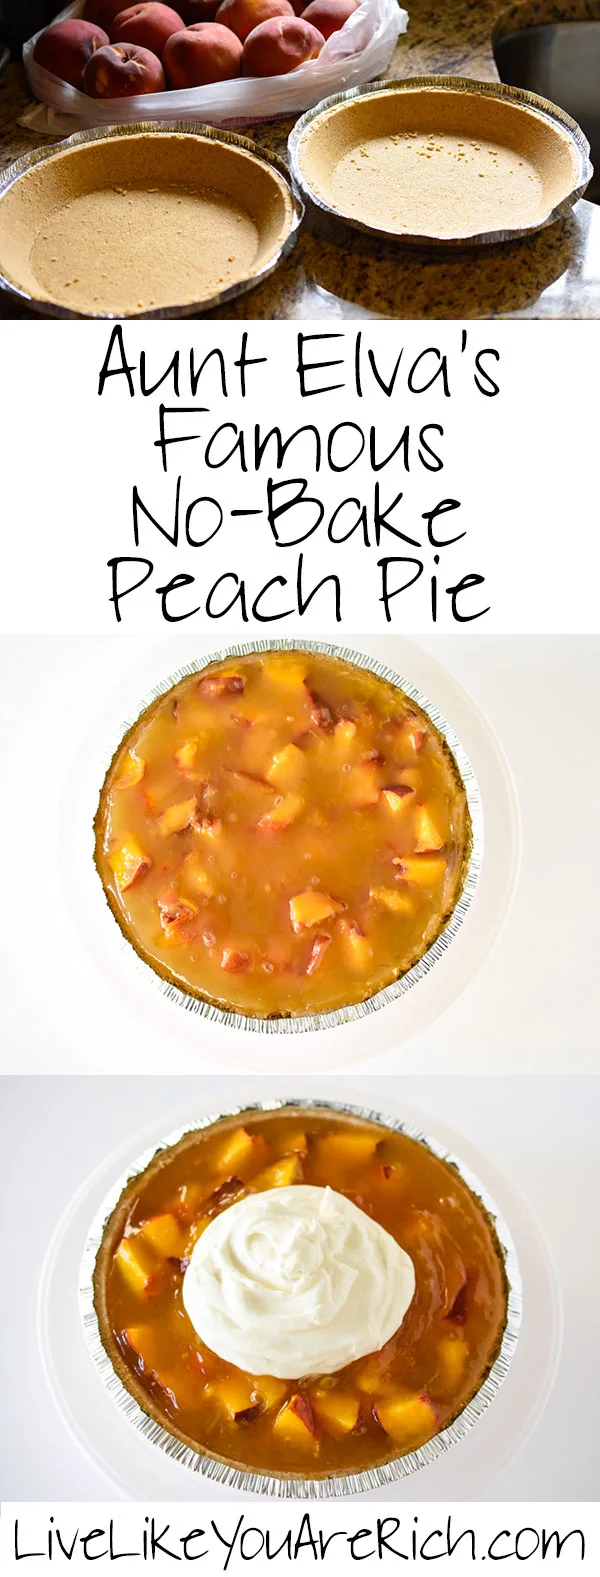 Aunt Elva's Famous No-Bake Peach Pie